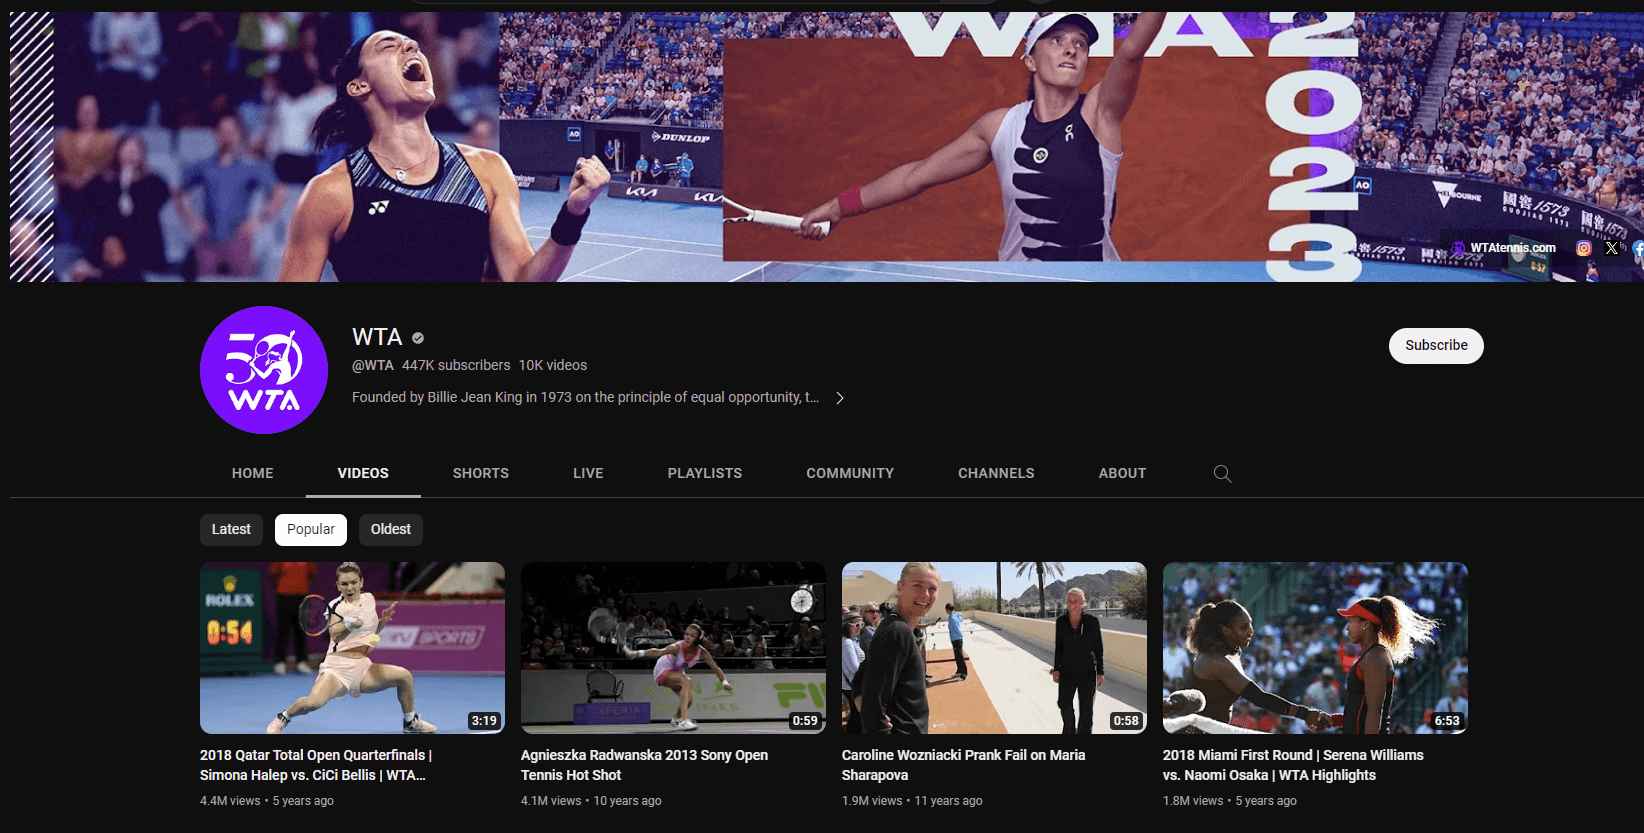 WTA sport channel